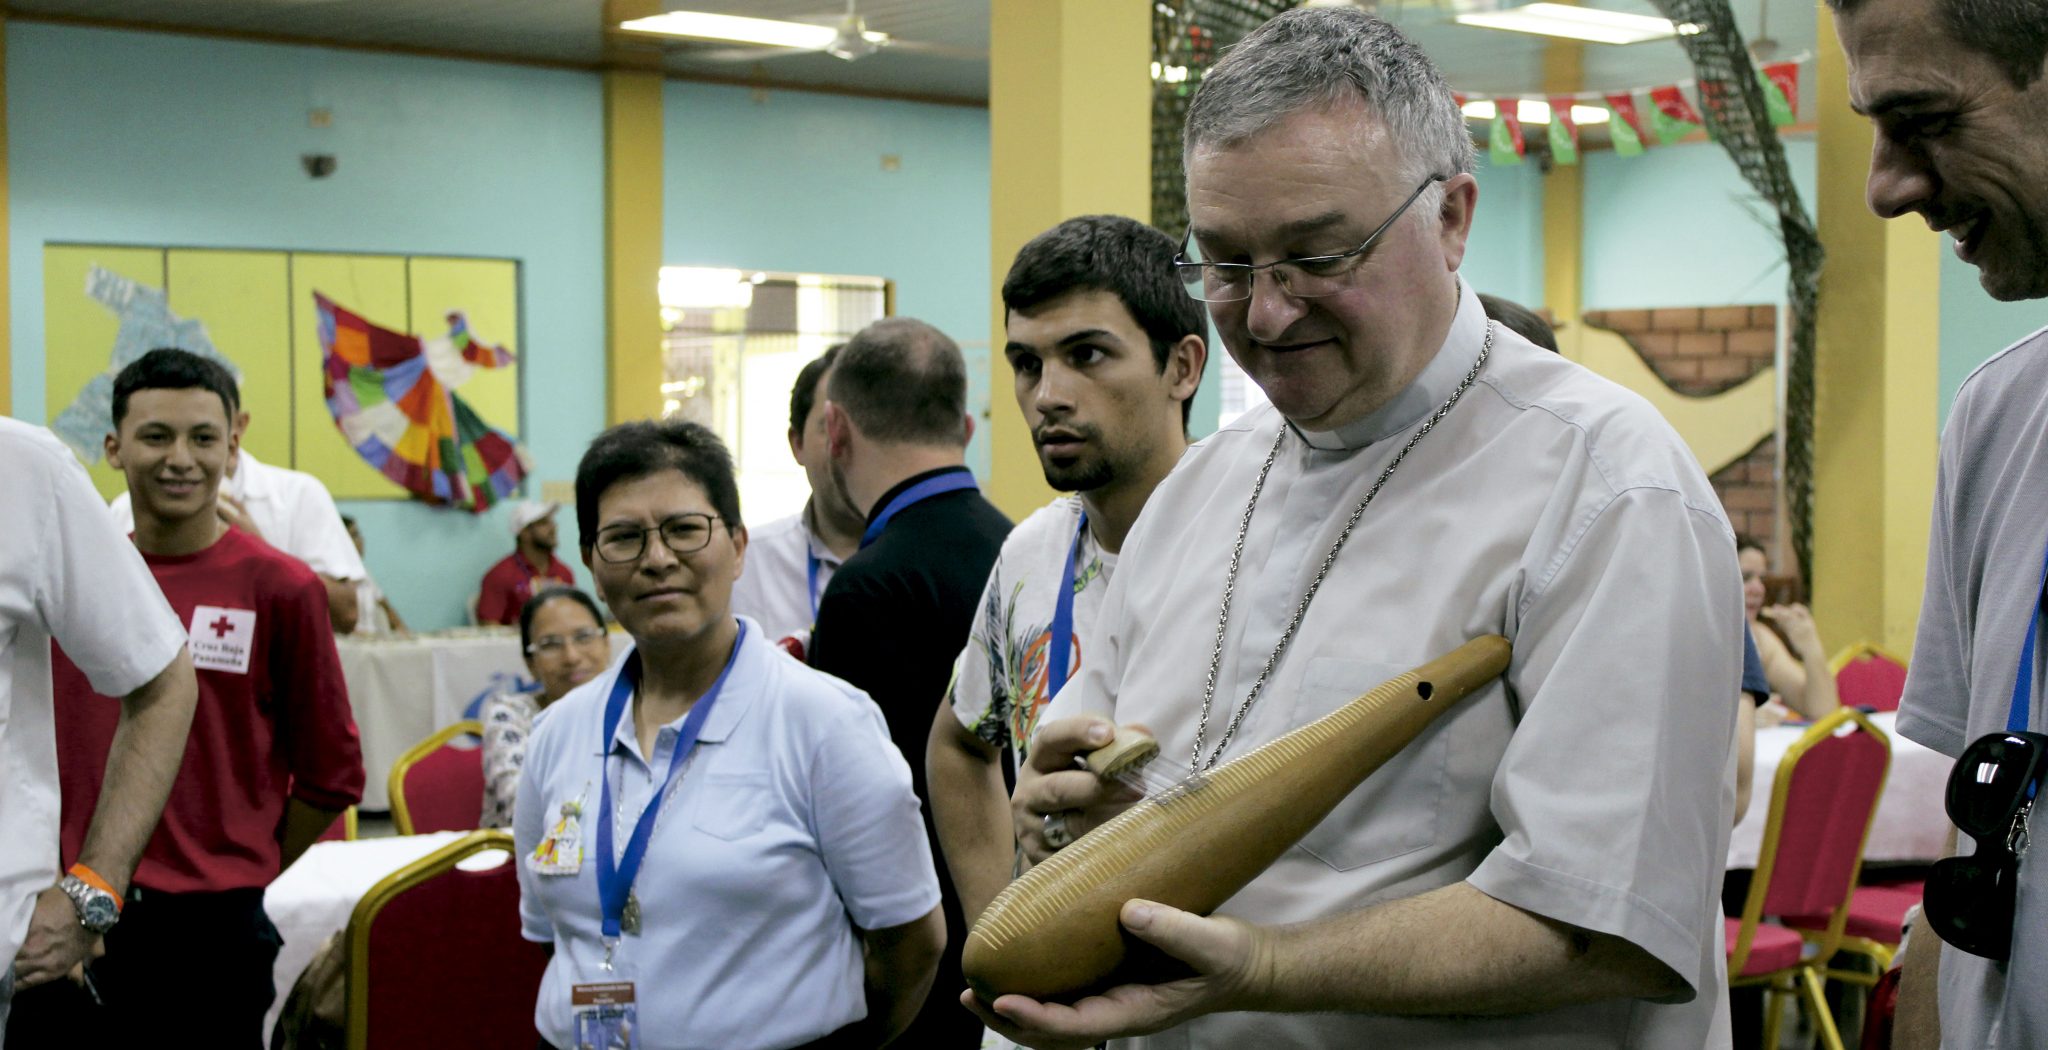 El obispo de Teruel, Antonio Gómez Cantero, en la JMJ de Panamá